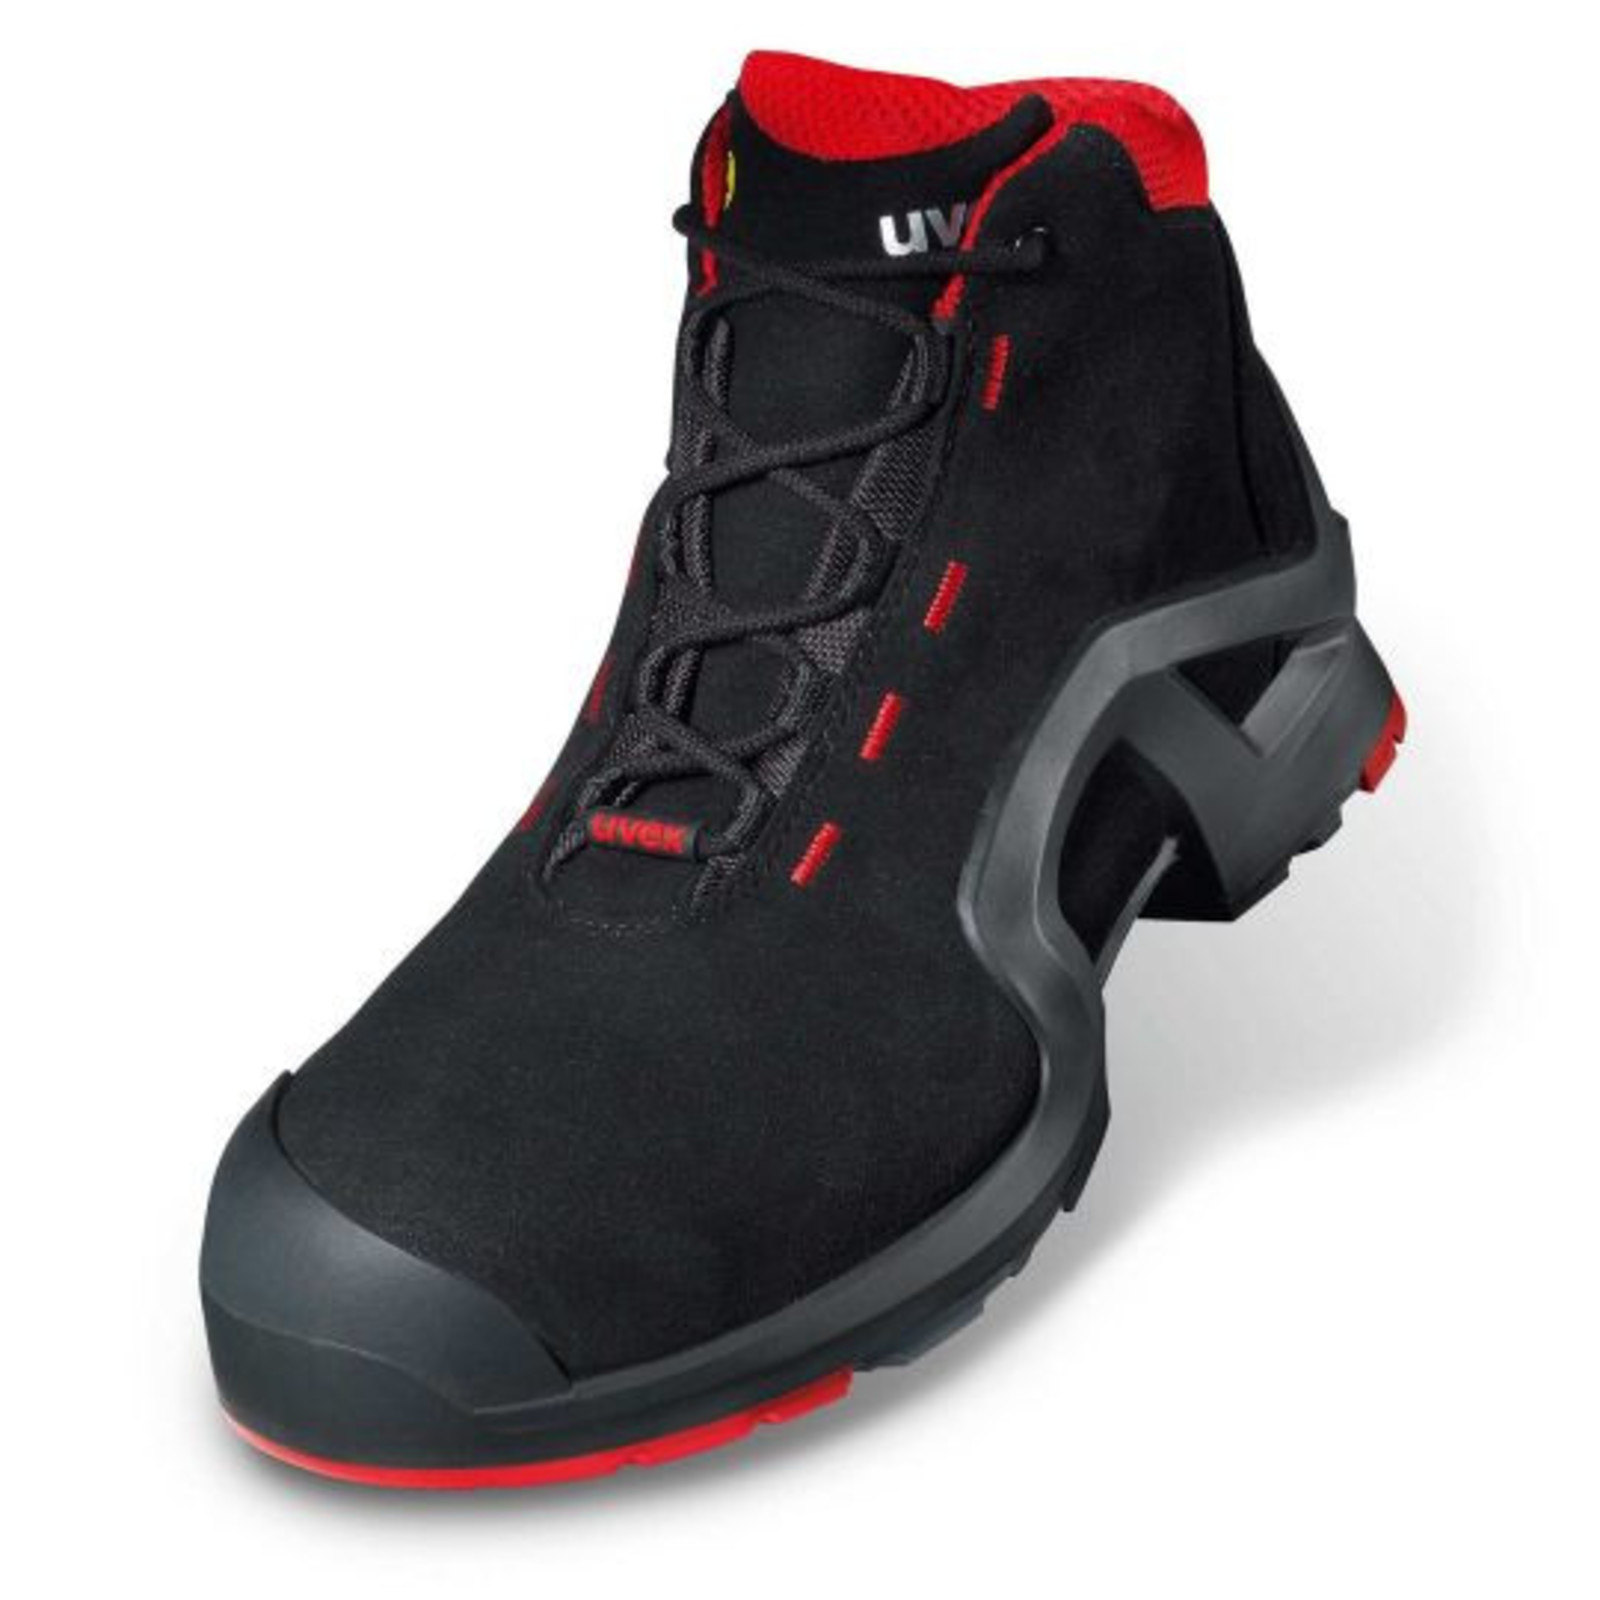 Vysoká bezpečnostná obuv Uvex 1 x-tended support S3 85172 - veľkosť: 37, farba: čierna/červená